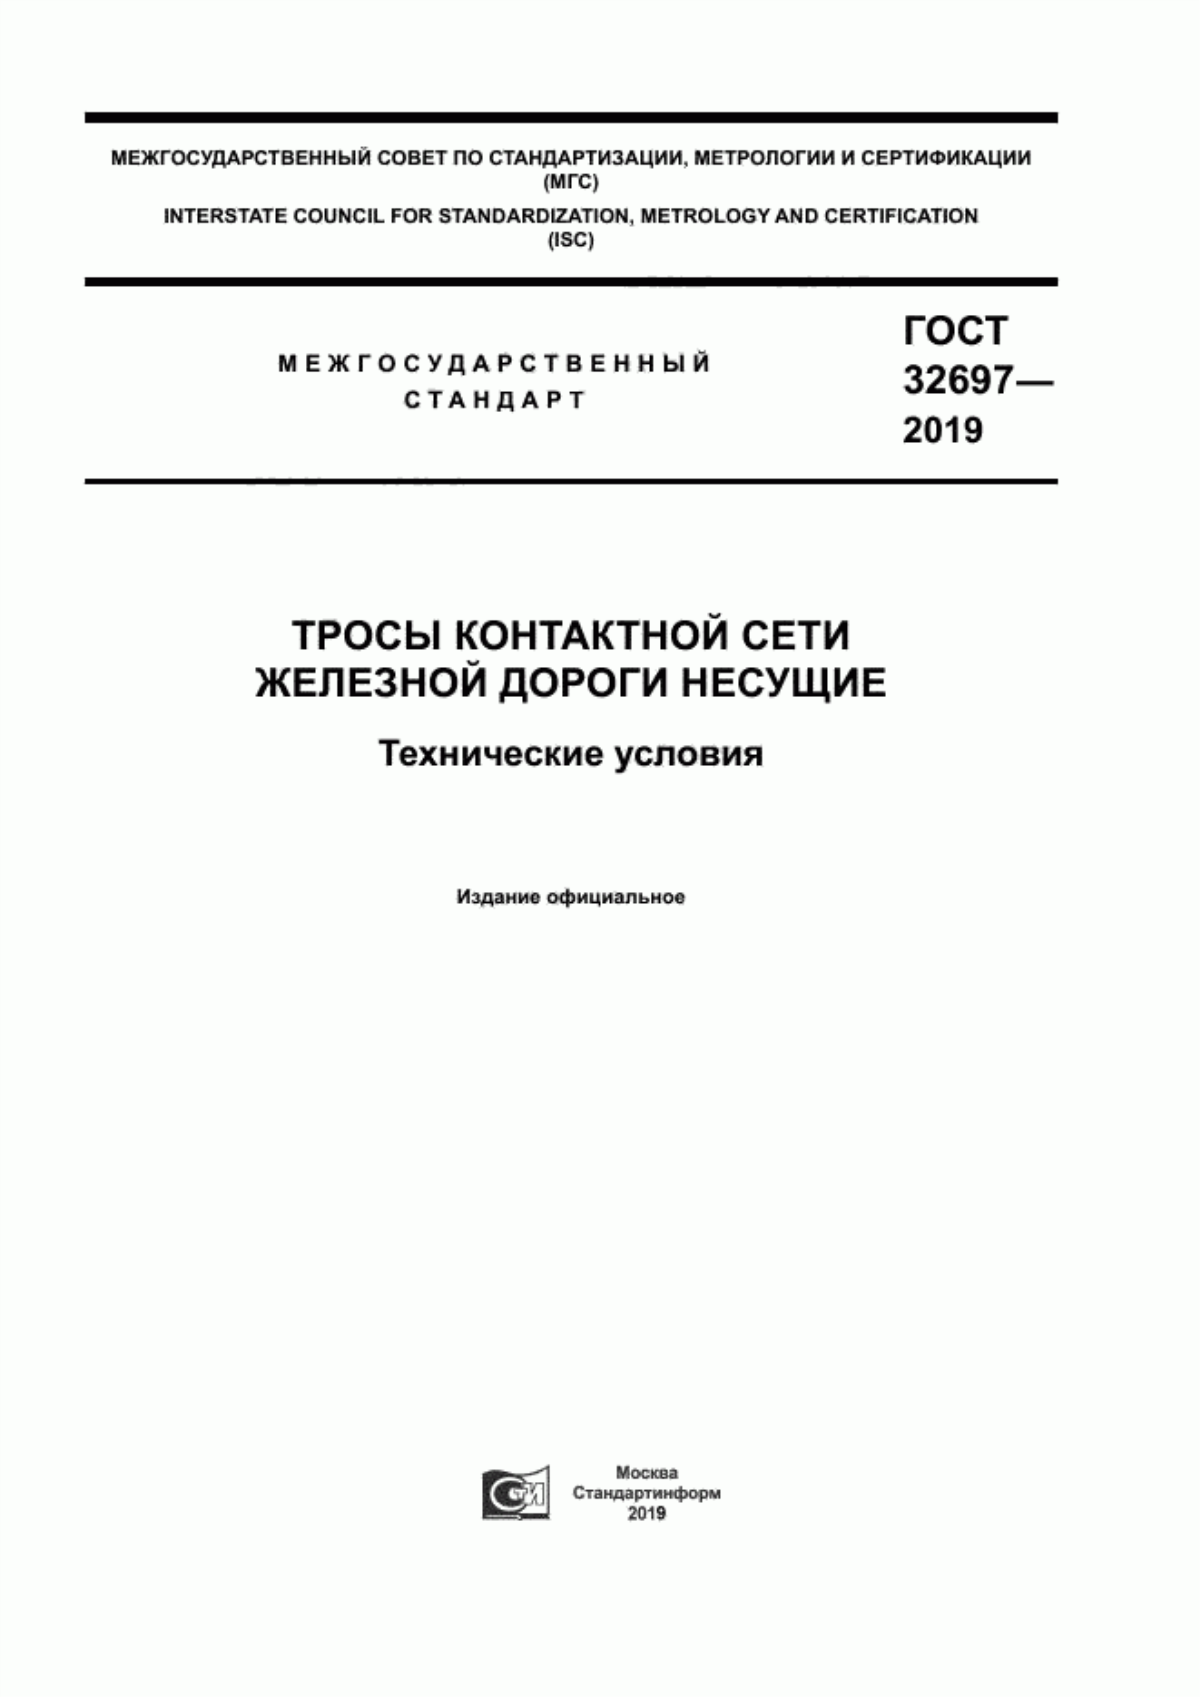 ГОСТ 32697-2019 Тросы контактной сети железной дороги несущие. Технические условия